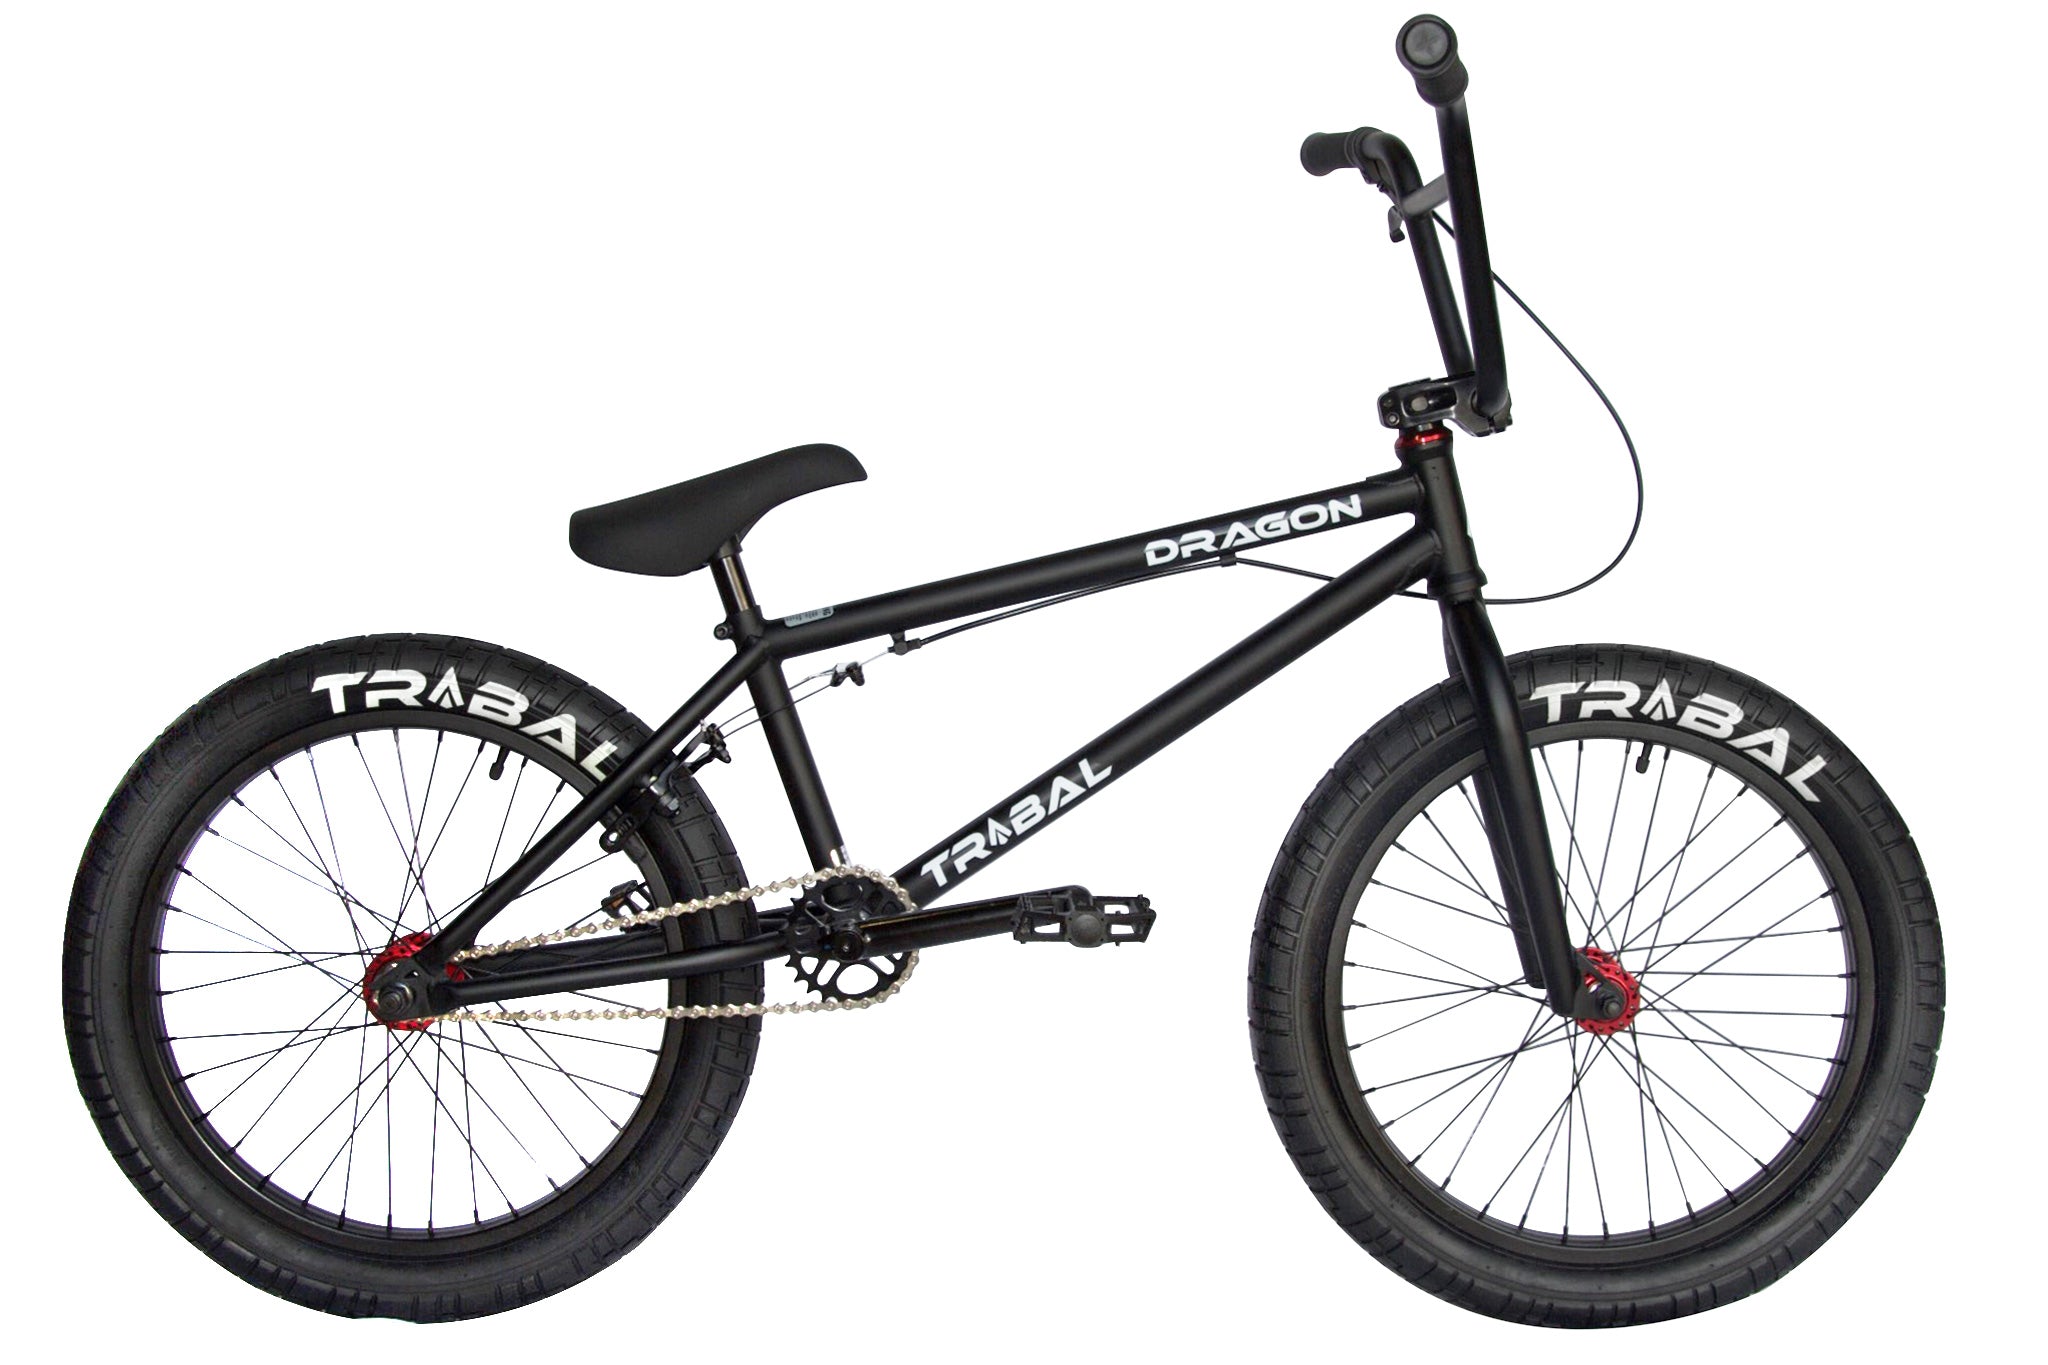 Tribal Dragon BMX Bike - Matte Black / Red Parts